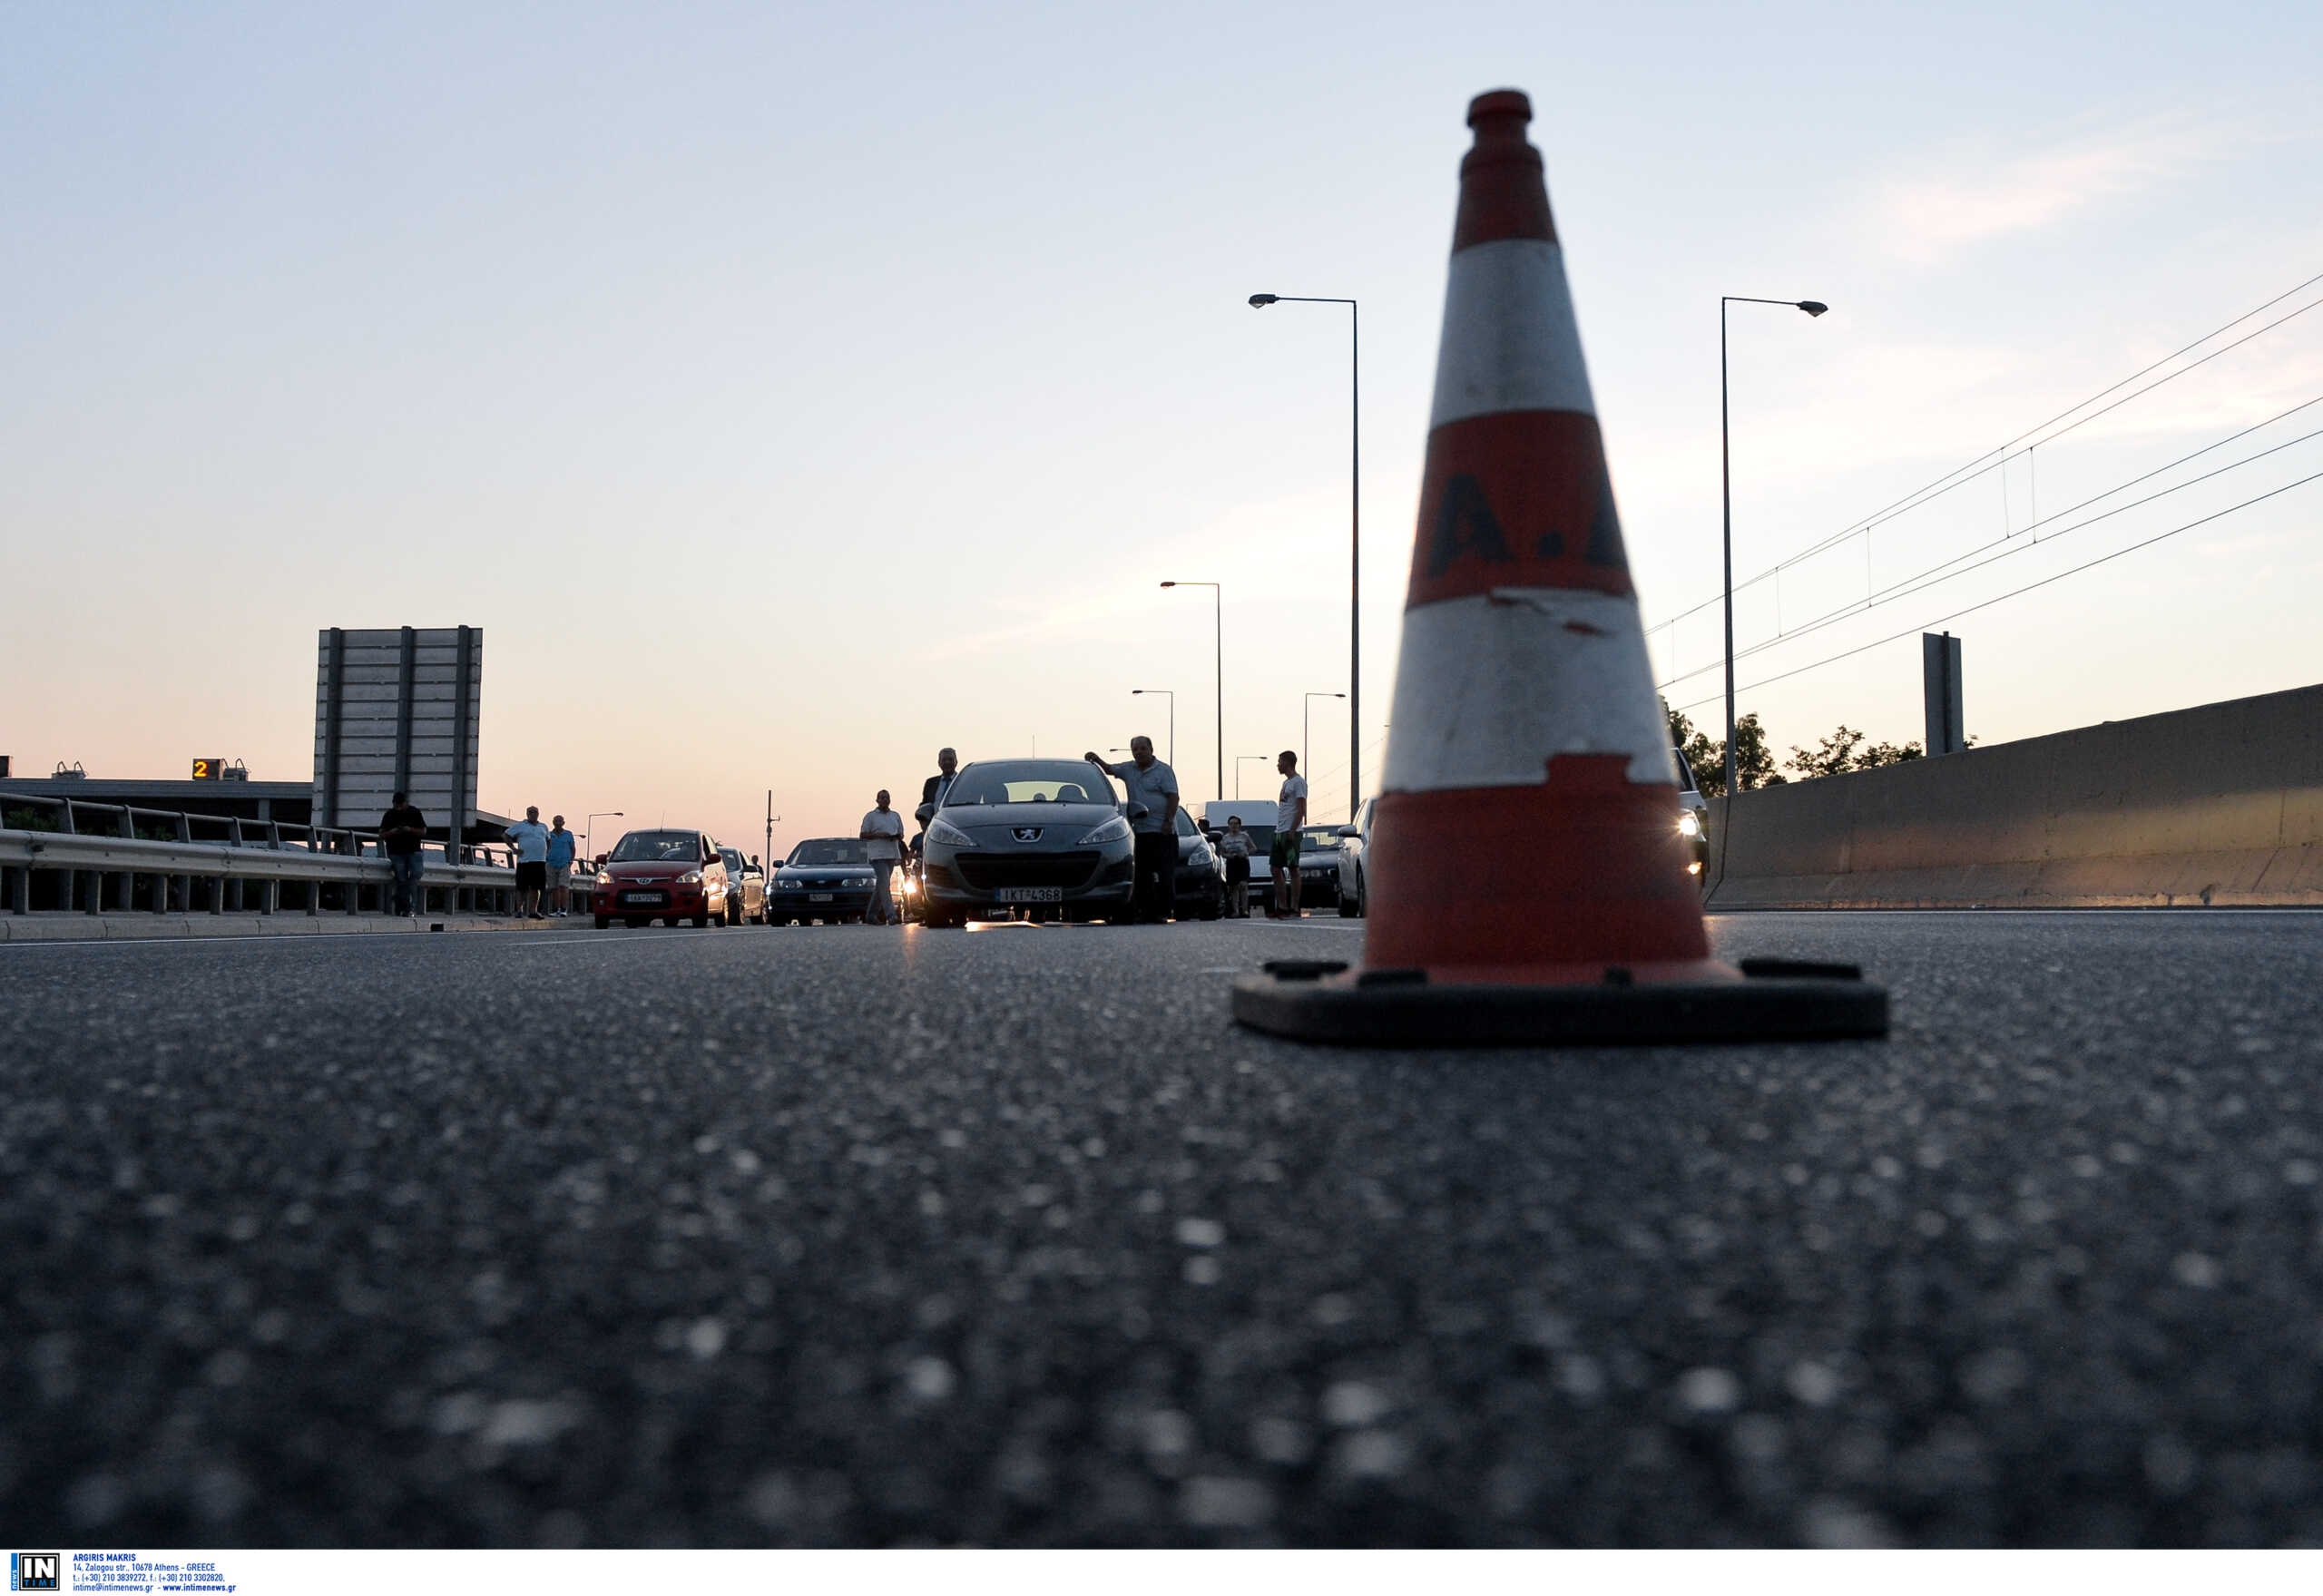 Κίνηση στους δρόμους: Μποτιλιάρισμα στην Αττική Οδό λόγω τροχαίου ατυχήματος